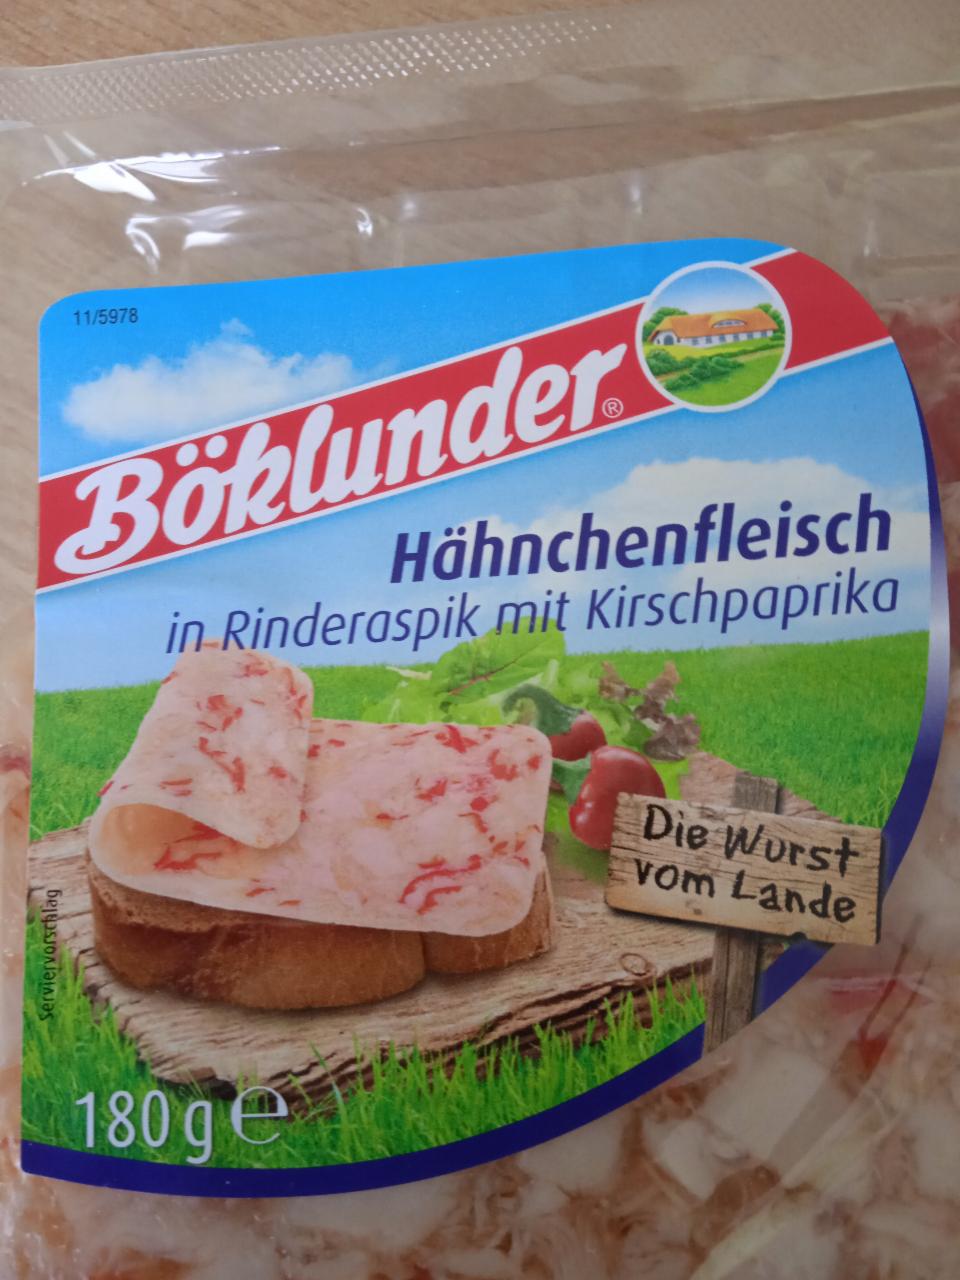 Fotografie - Hähnchenfleisch in Rinderaspik mit Kirschpaprika Böklunder